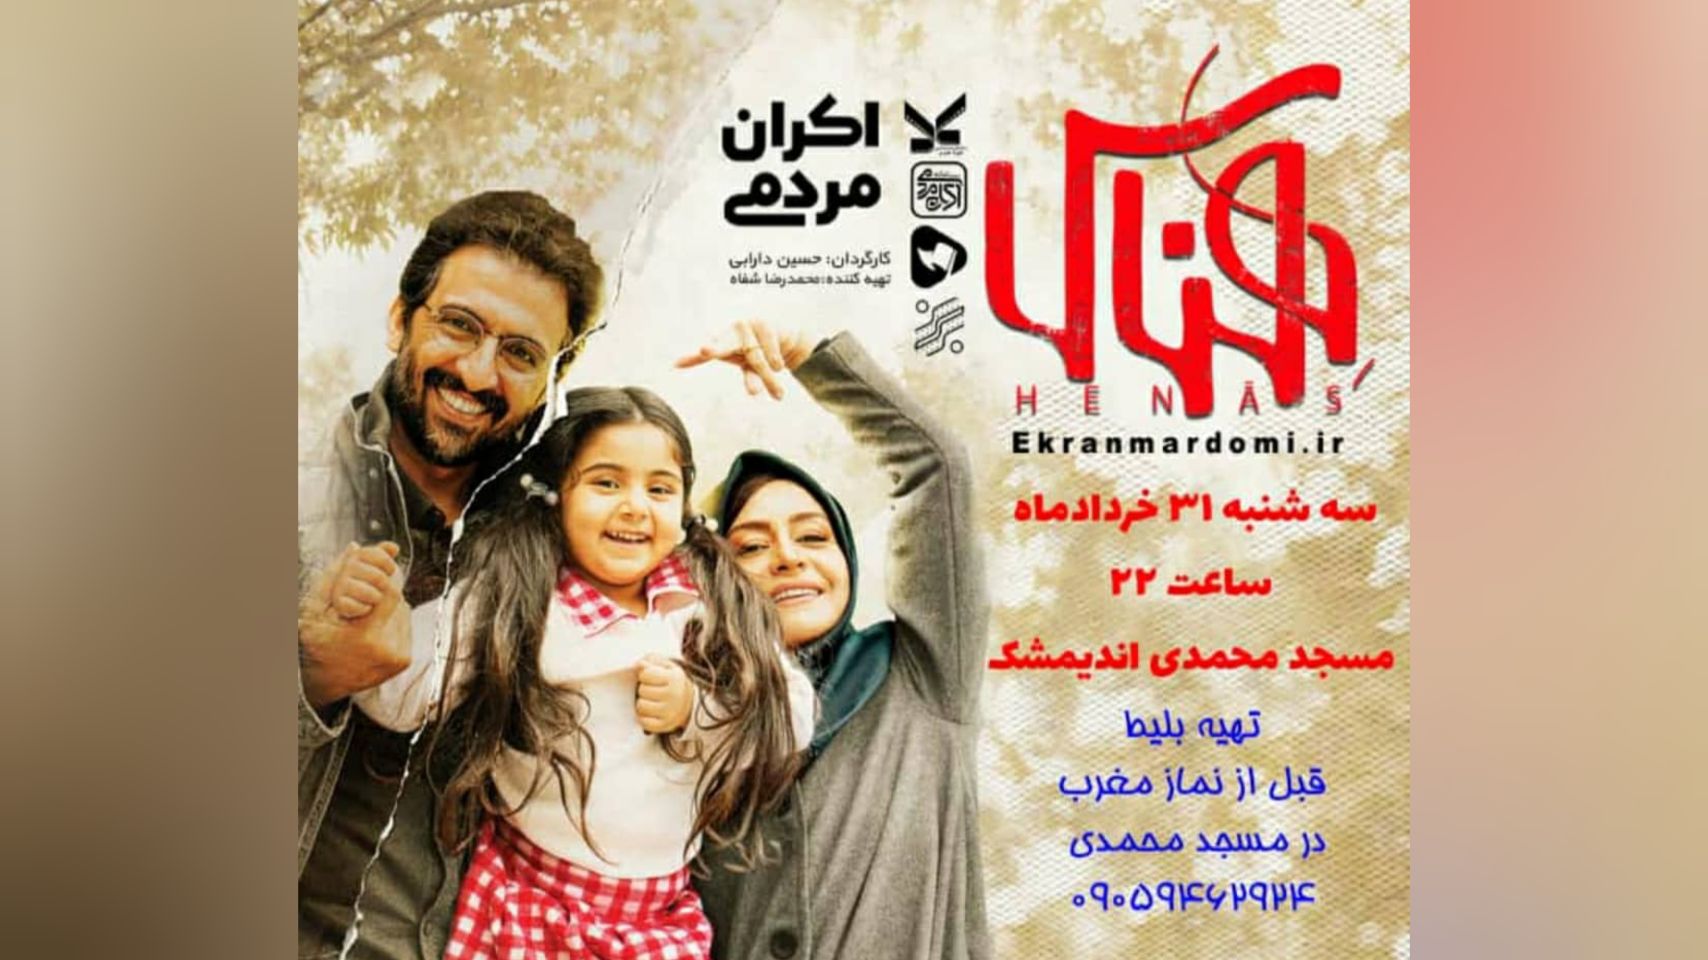 اکران عمومي فيلم هناس در کانون فرهنگي هنري شهيد دانش انديمشک